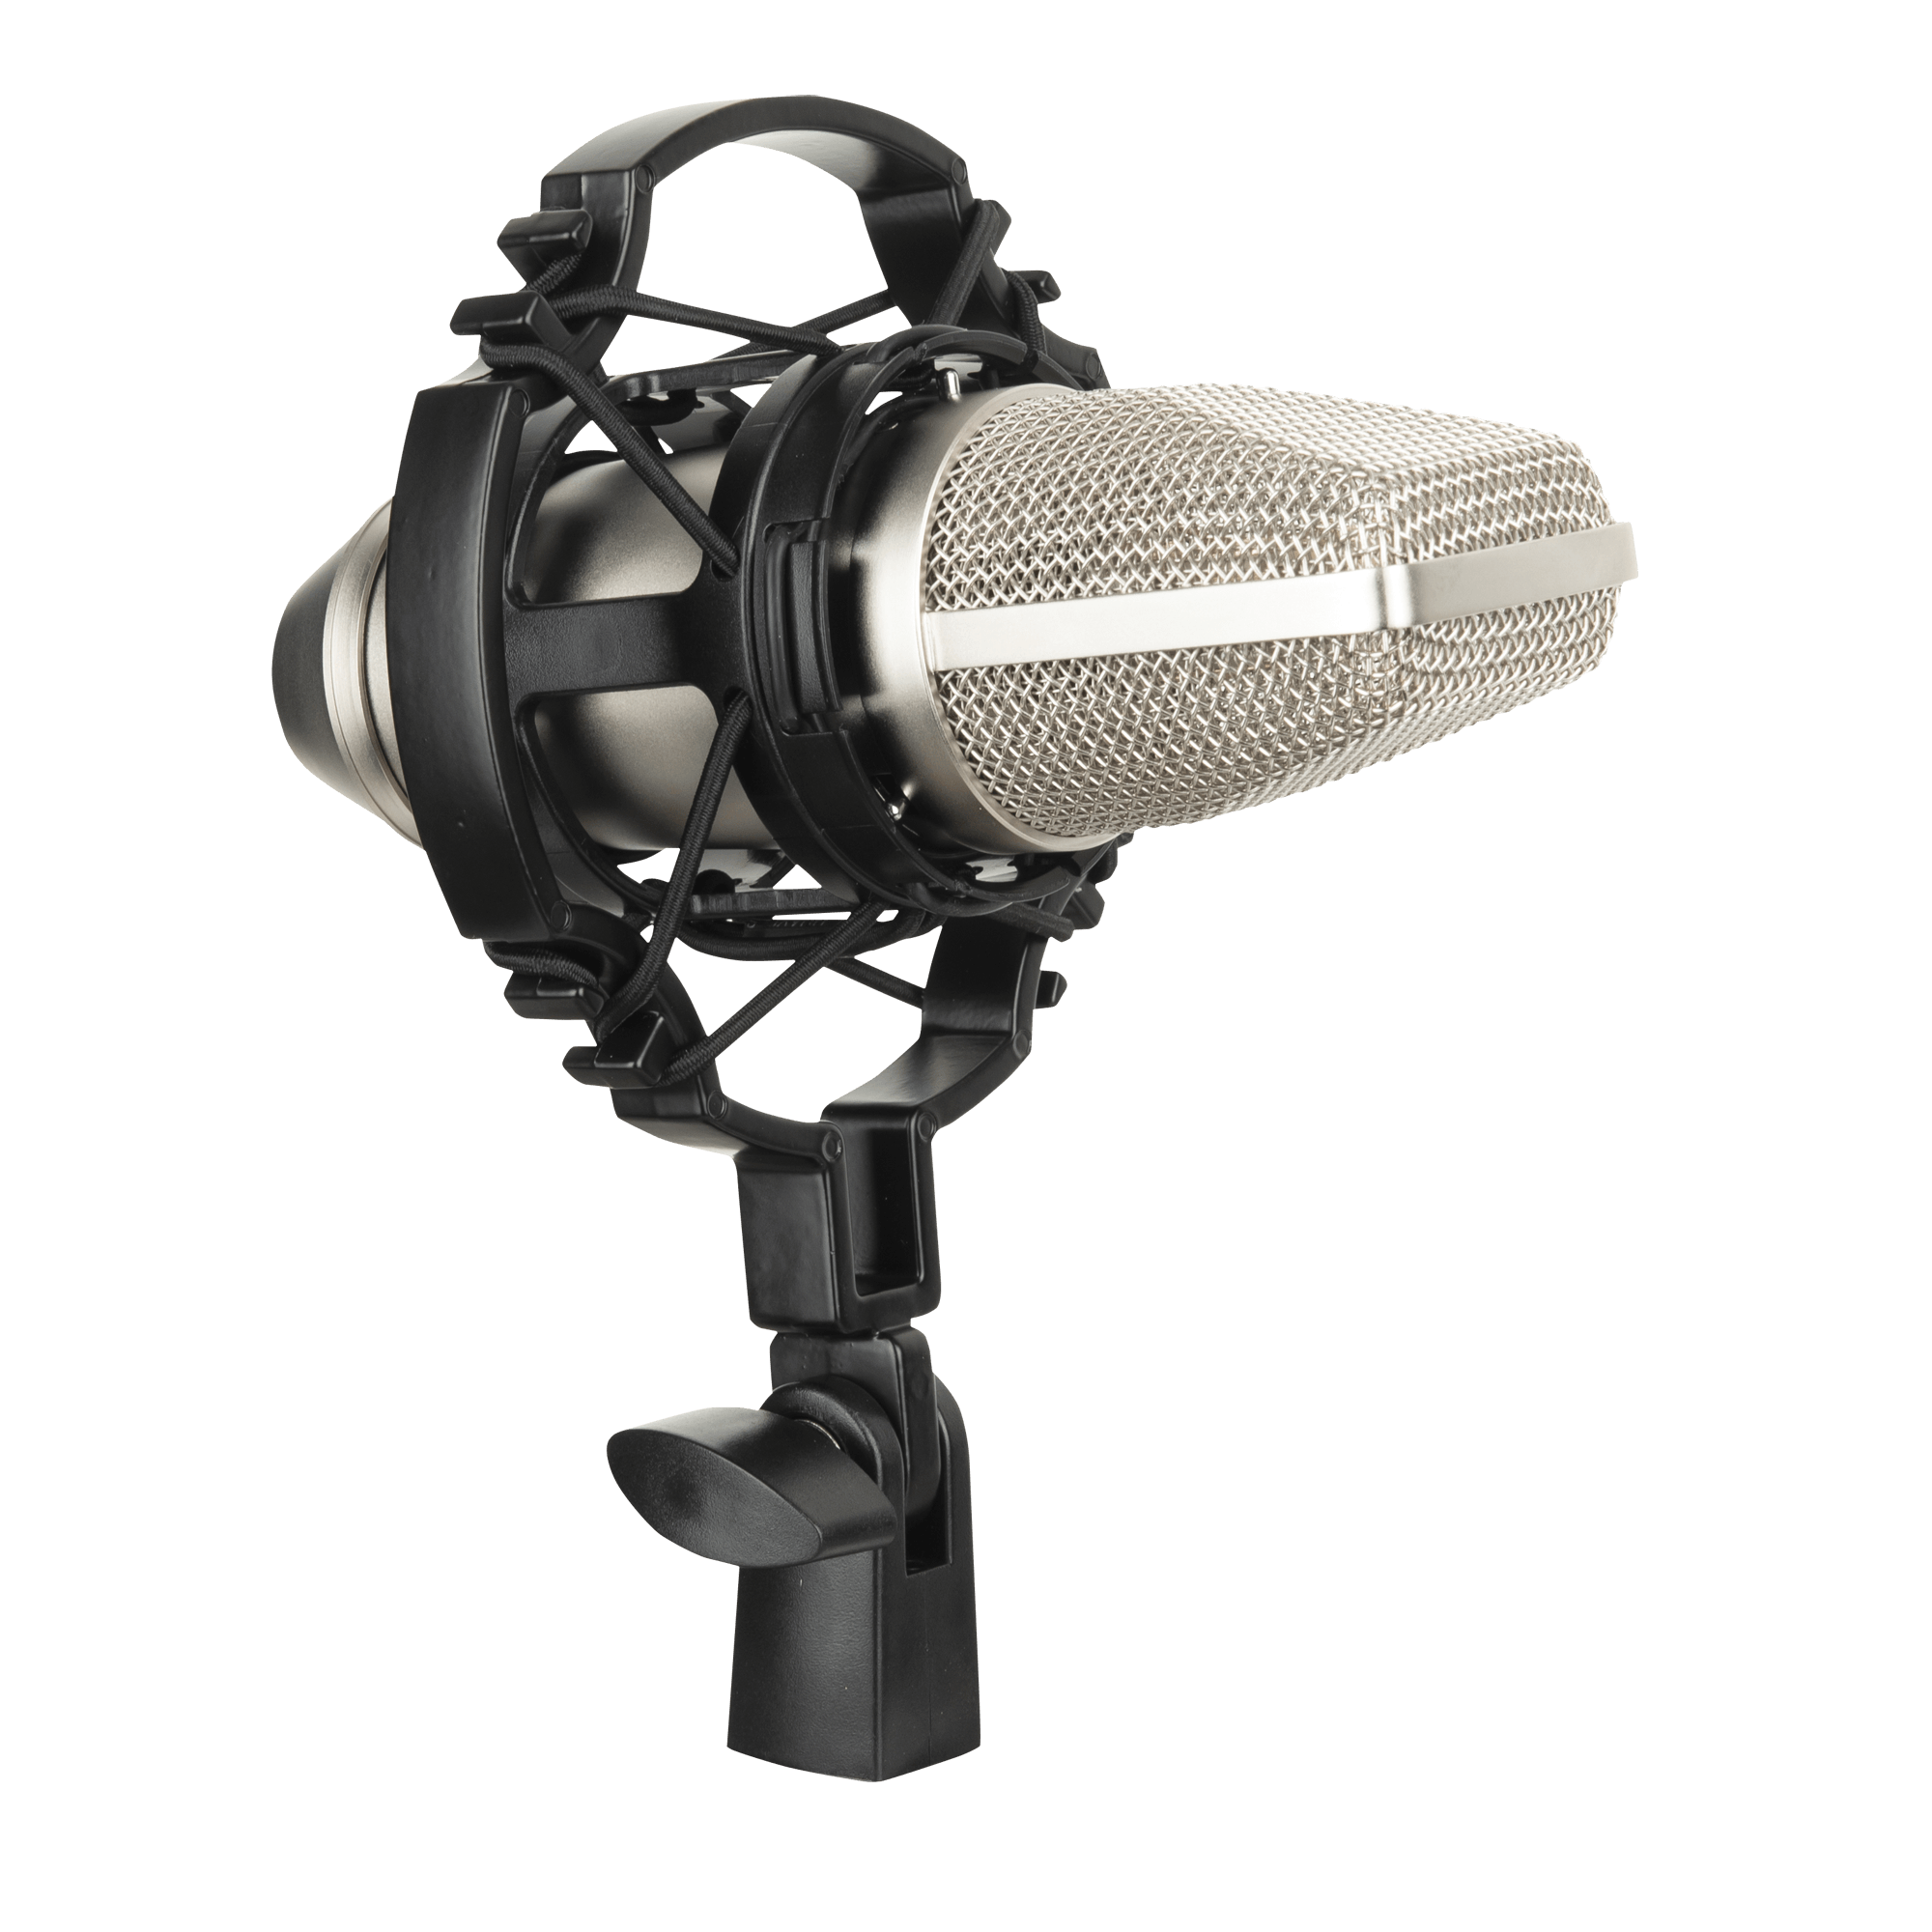 DAP CM-87 Large-diaphragm FET Condenser Studio Microphone - DY Pro Audio